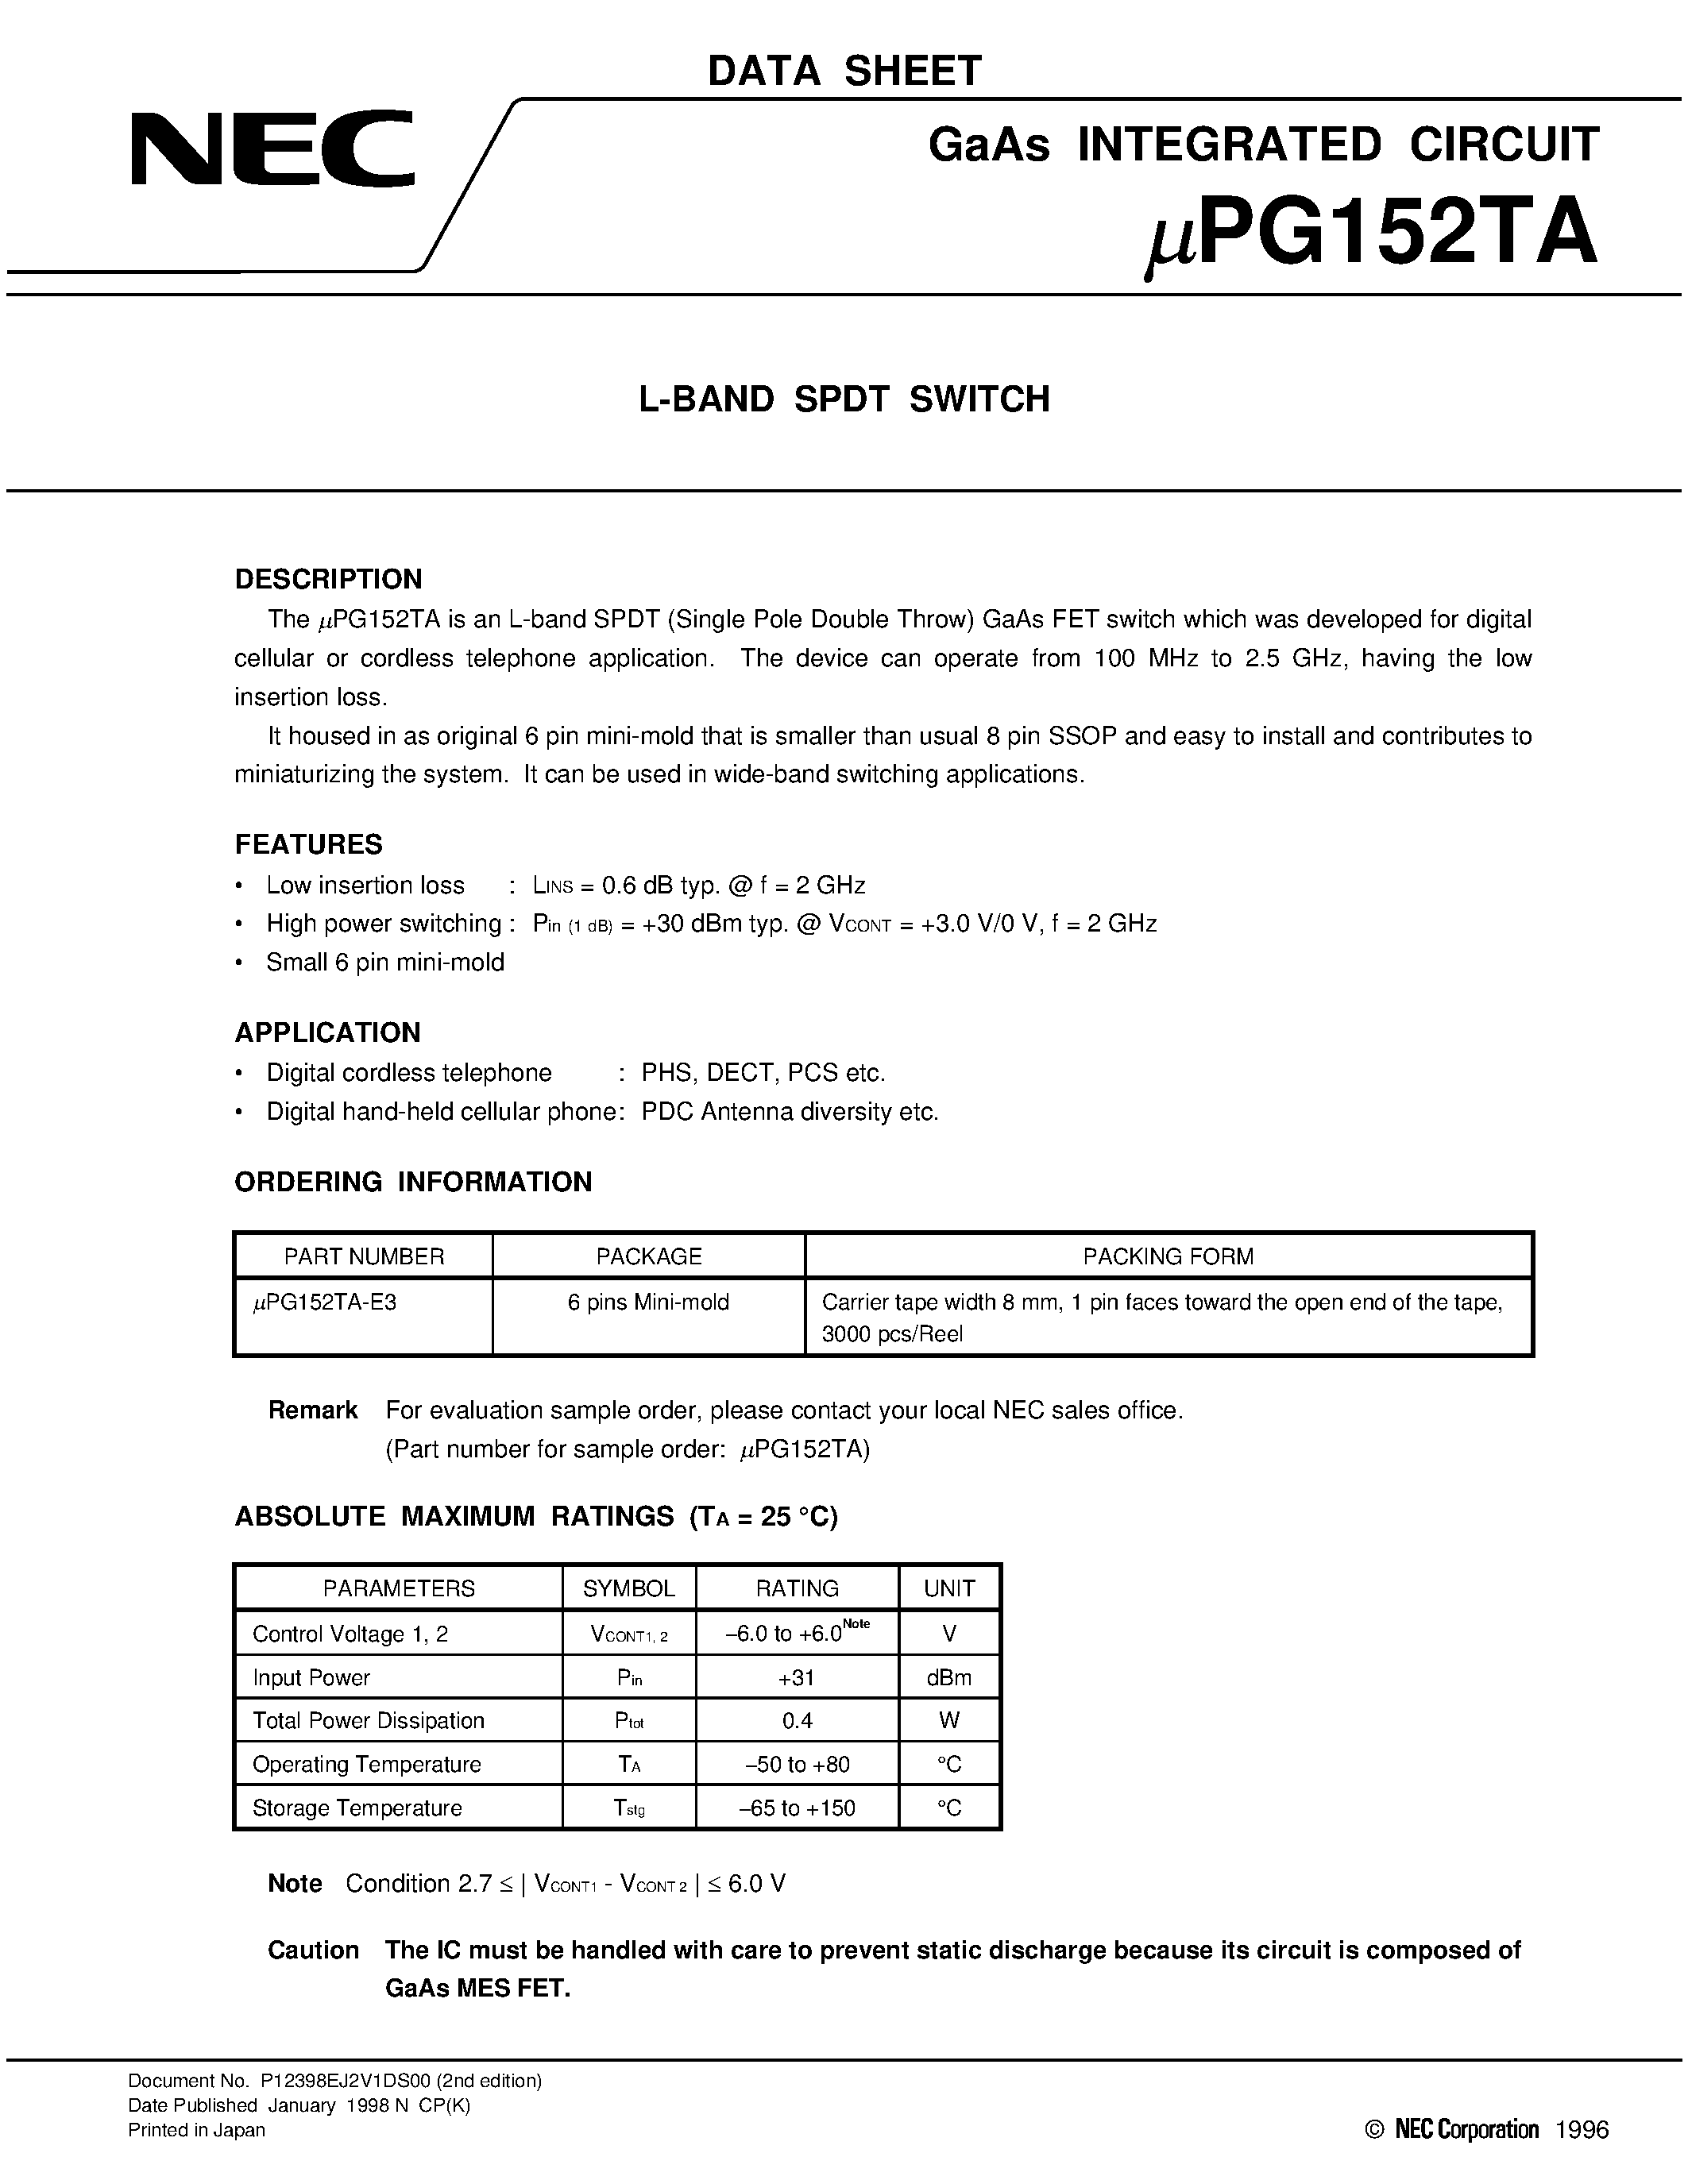 Даташит UPG152TA-E3 - L-BAND SPDT SWITCH страница 1